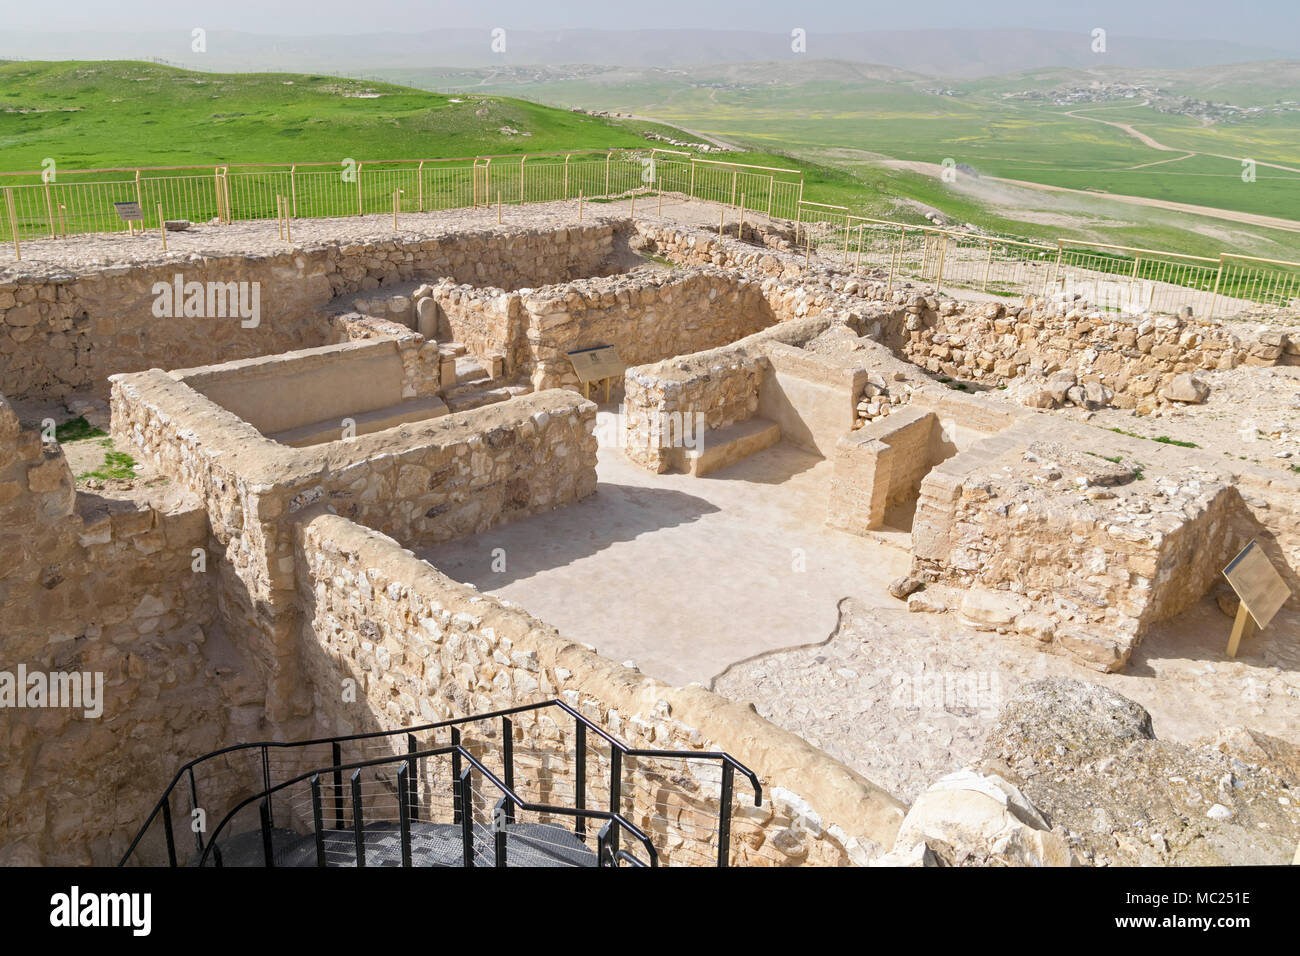 Ricostruito il tempio israelitico nella Judean fortezza di Tel arad, Israele con moderni villaggi beduini in background Foto Stock